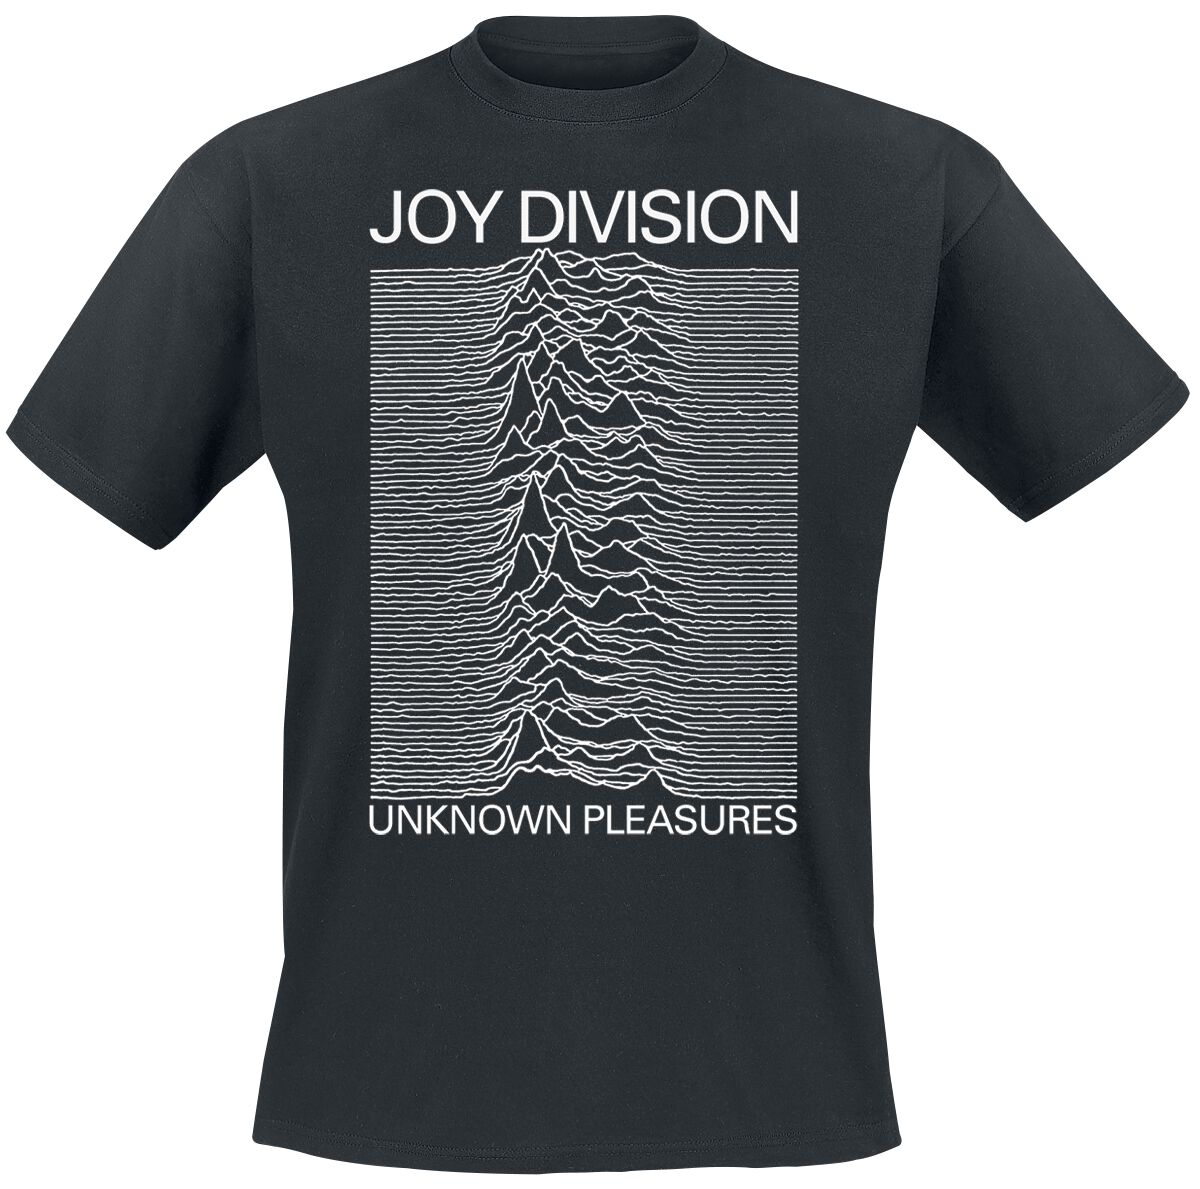 Joy Division T-Shirt - Unknown pleasures - S bis XXL - für Männer - Größe L - schwarz  - Lizenziertes Merchandise!